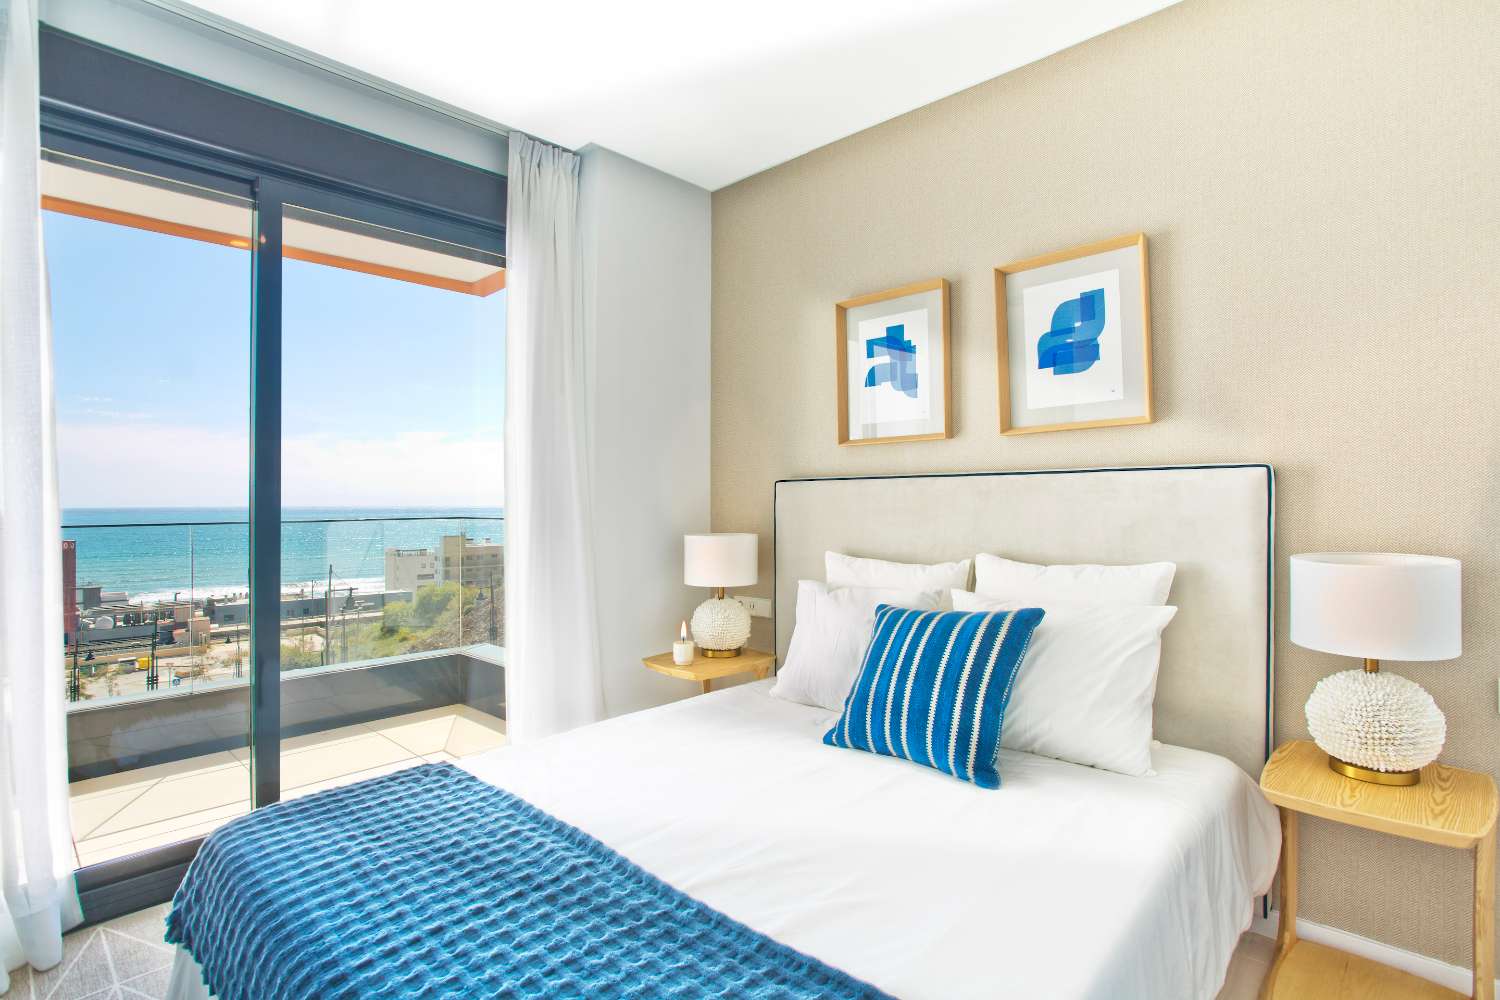 Rymlig lägenhet med 3 sovrum i ett privilegierat läge några minuter från stranden med terrass på 62 m2